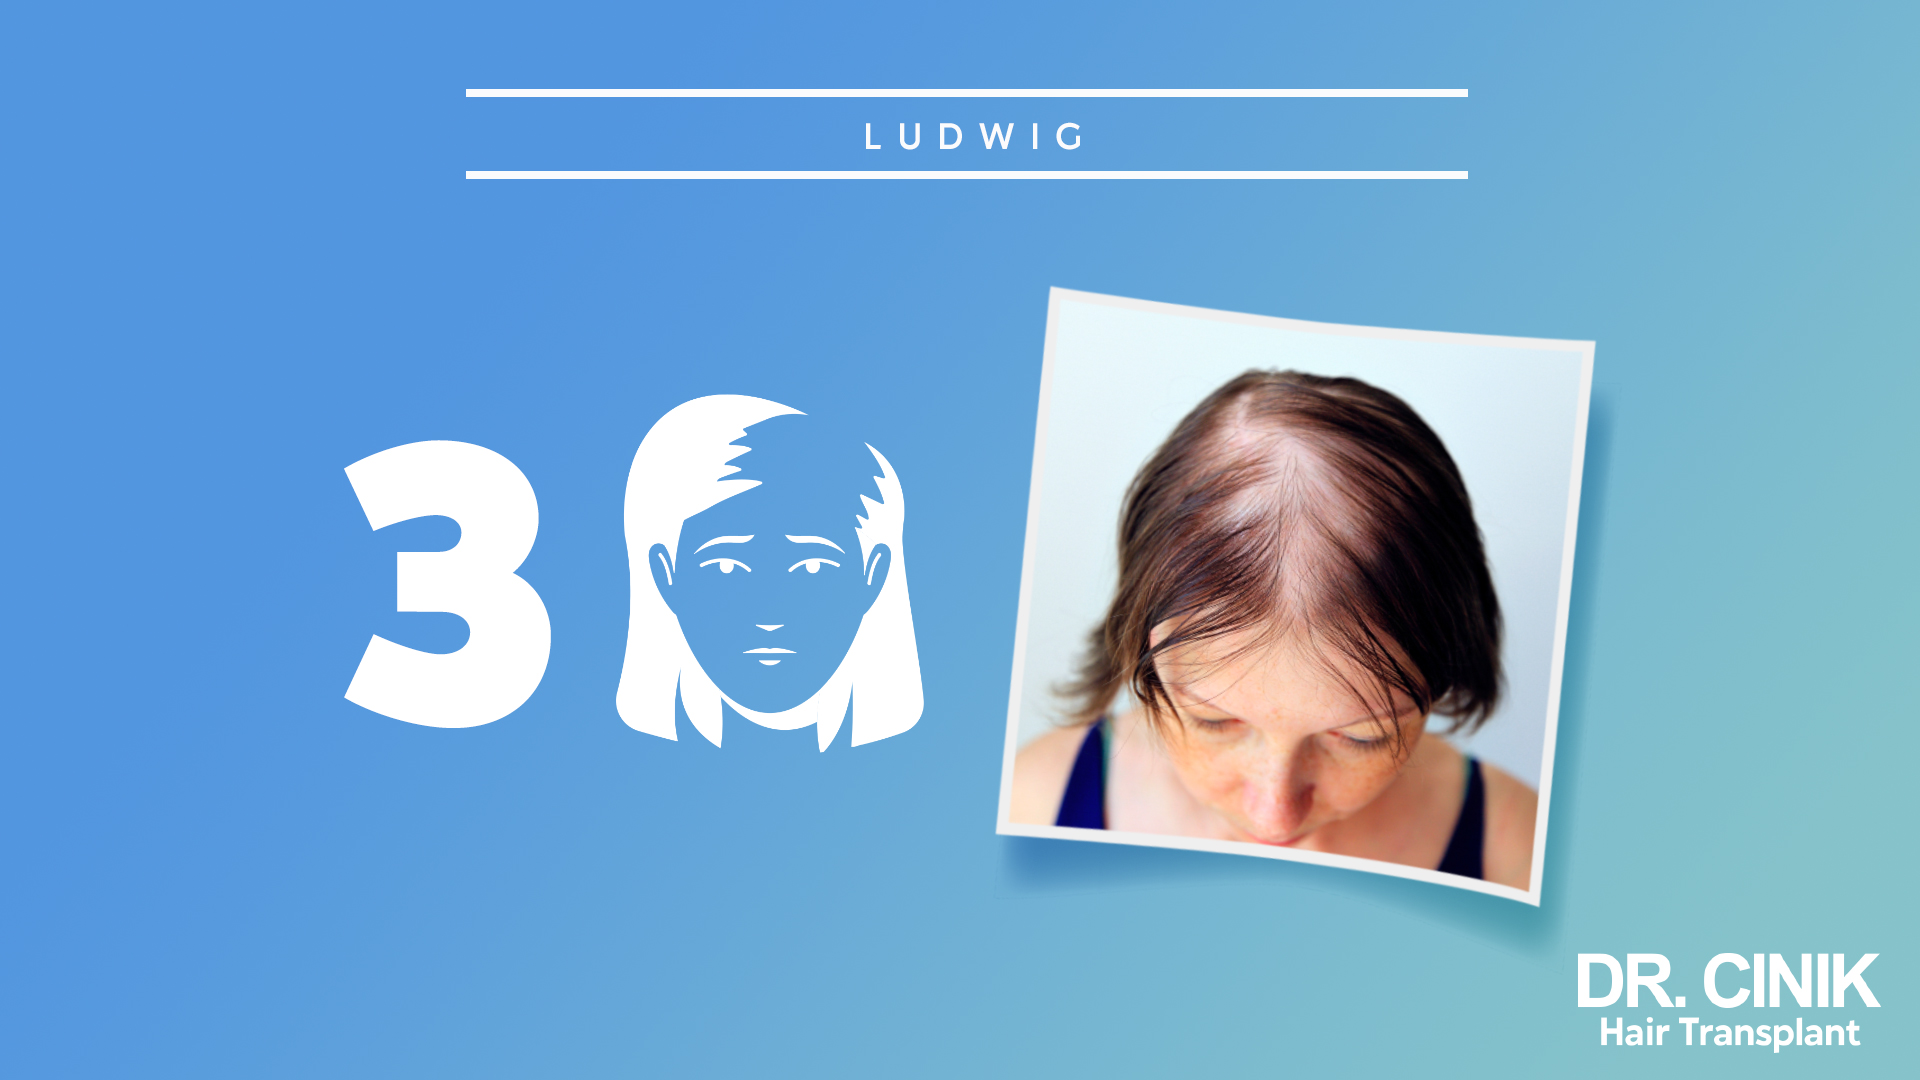 Imagen que muestra el tercer paso de la escala Ludwig. A la izquierda, hay un gráfico con el número 3 y una ilustración de una mujer con una pérdida de cabello aún más avanzada. A la derecha, una foto de una mujer mostrando una pérdida de cabello muy notable en la parte superior de la cabeza. Fondo azul con texto que dice 'DR. CINIK Hair Transplant'